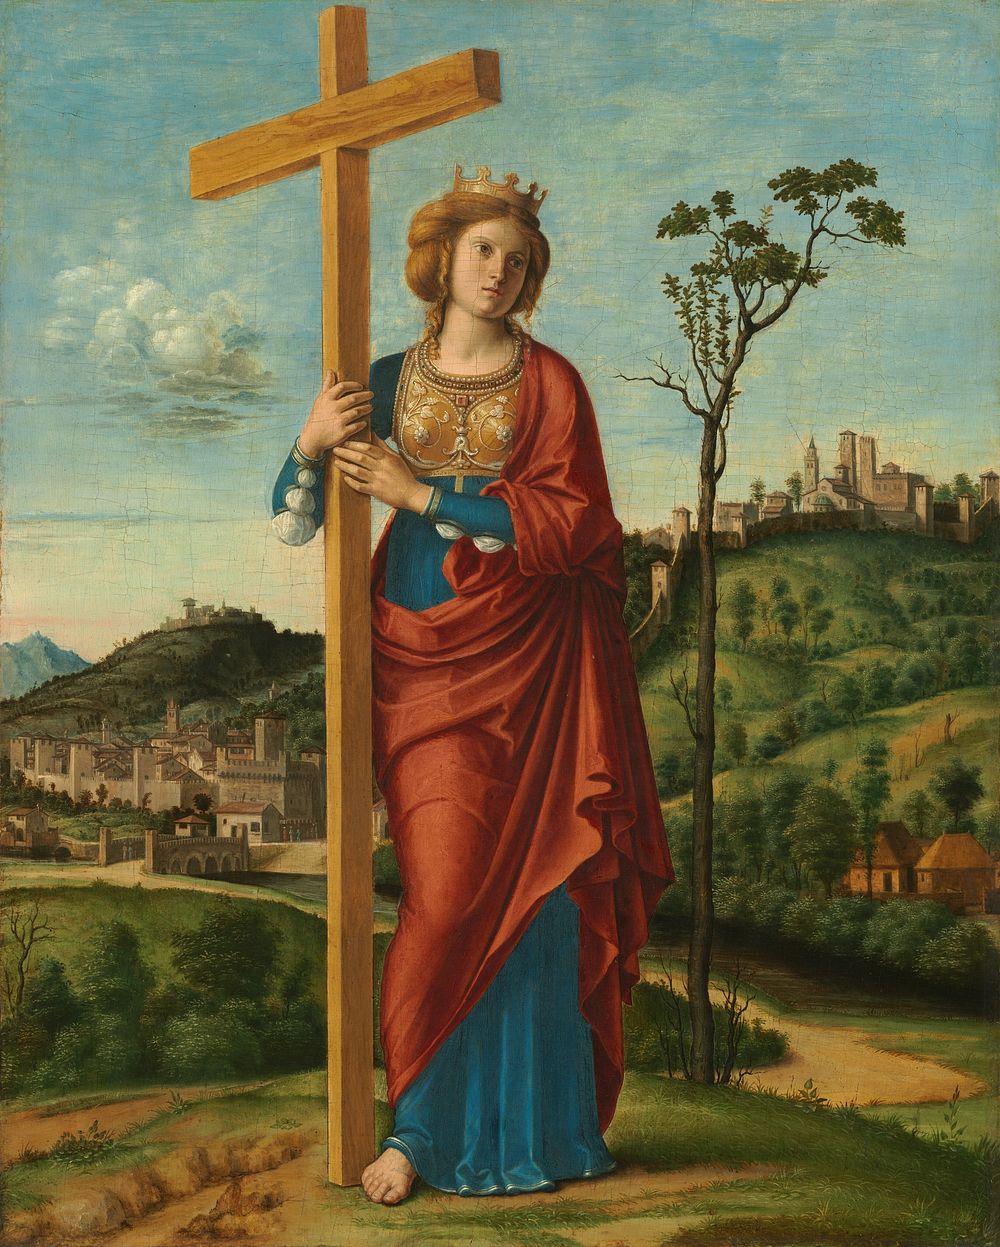 Saint Helena (ca. 1495) by Cima da Conegliano.  